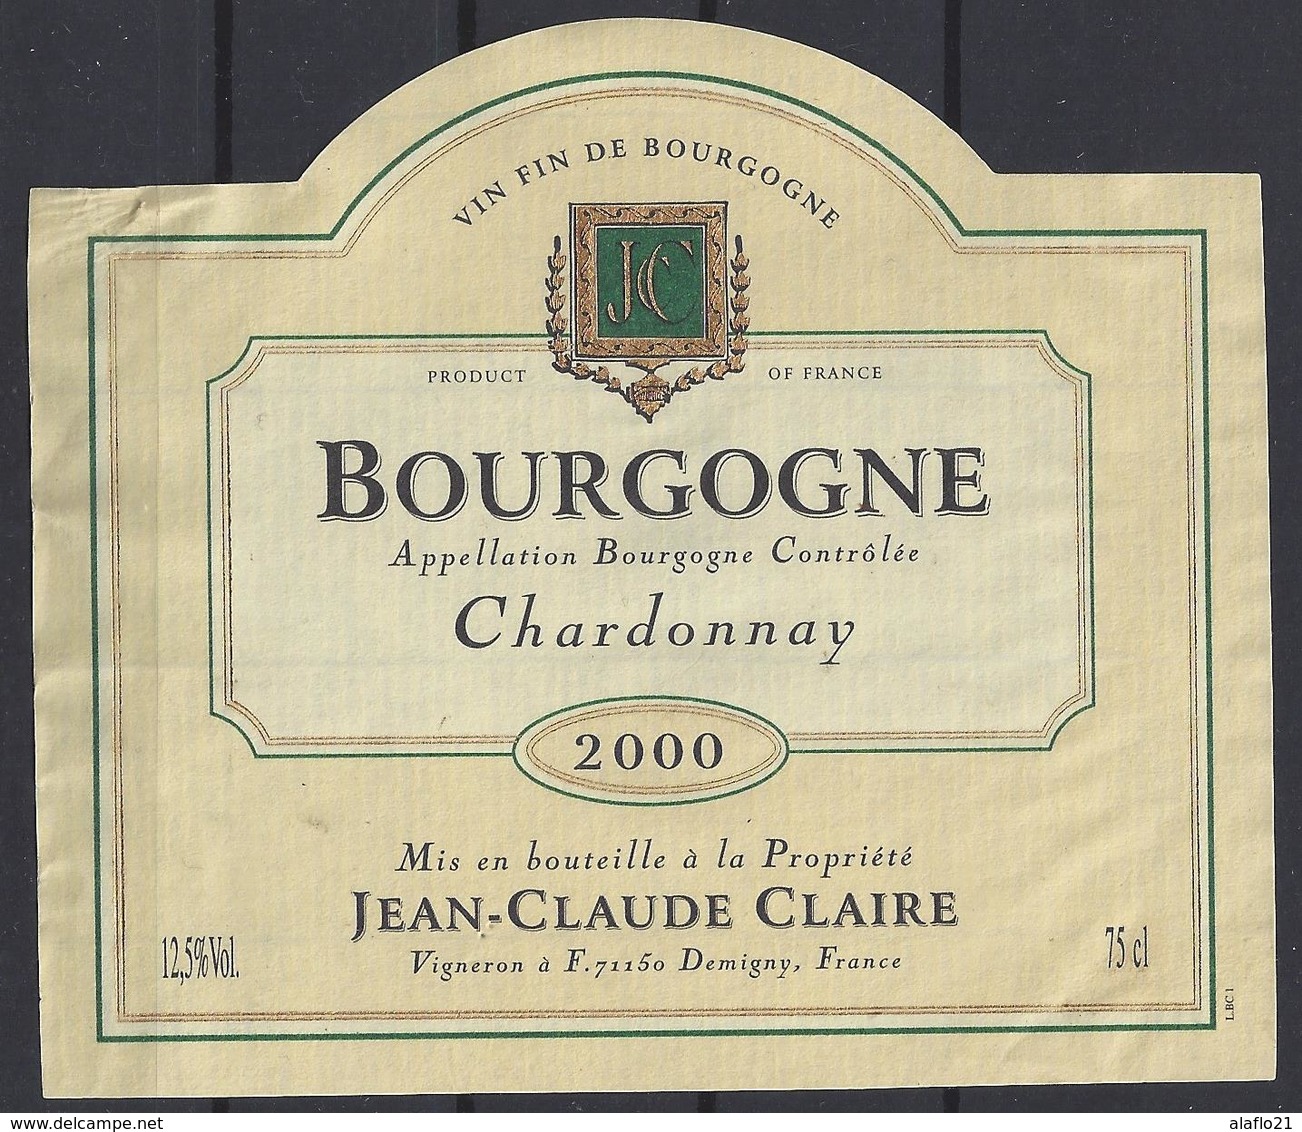 ETIQUETTE BOURGOGNE CHARDONNAY 2000 - Jean Claude Claire - Bourgogne